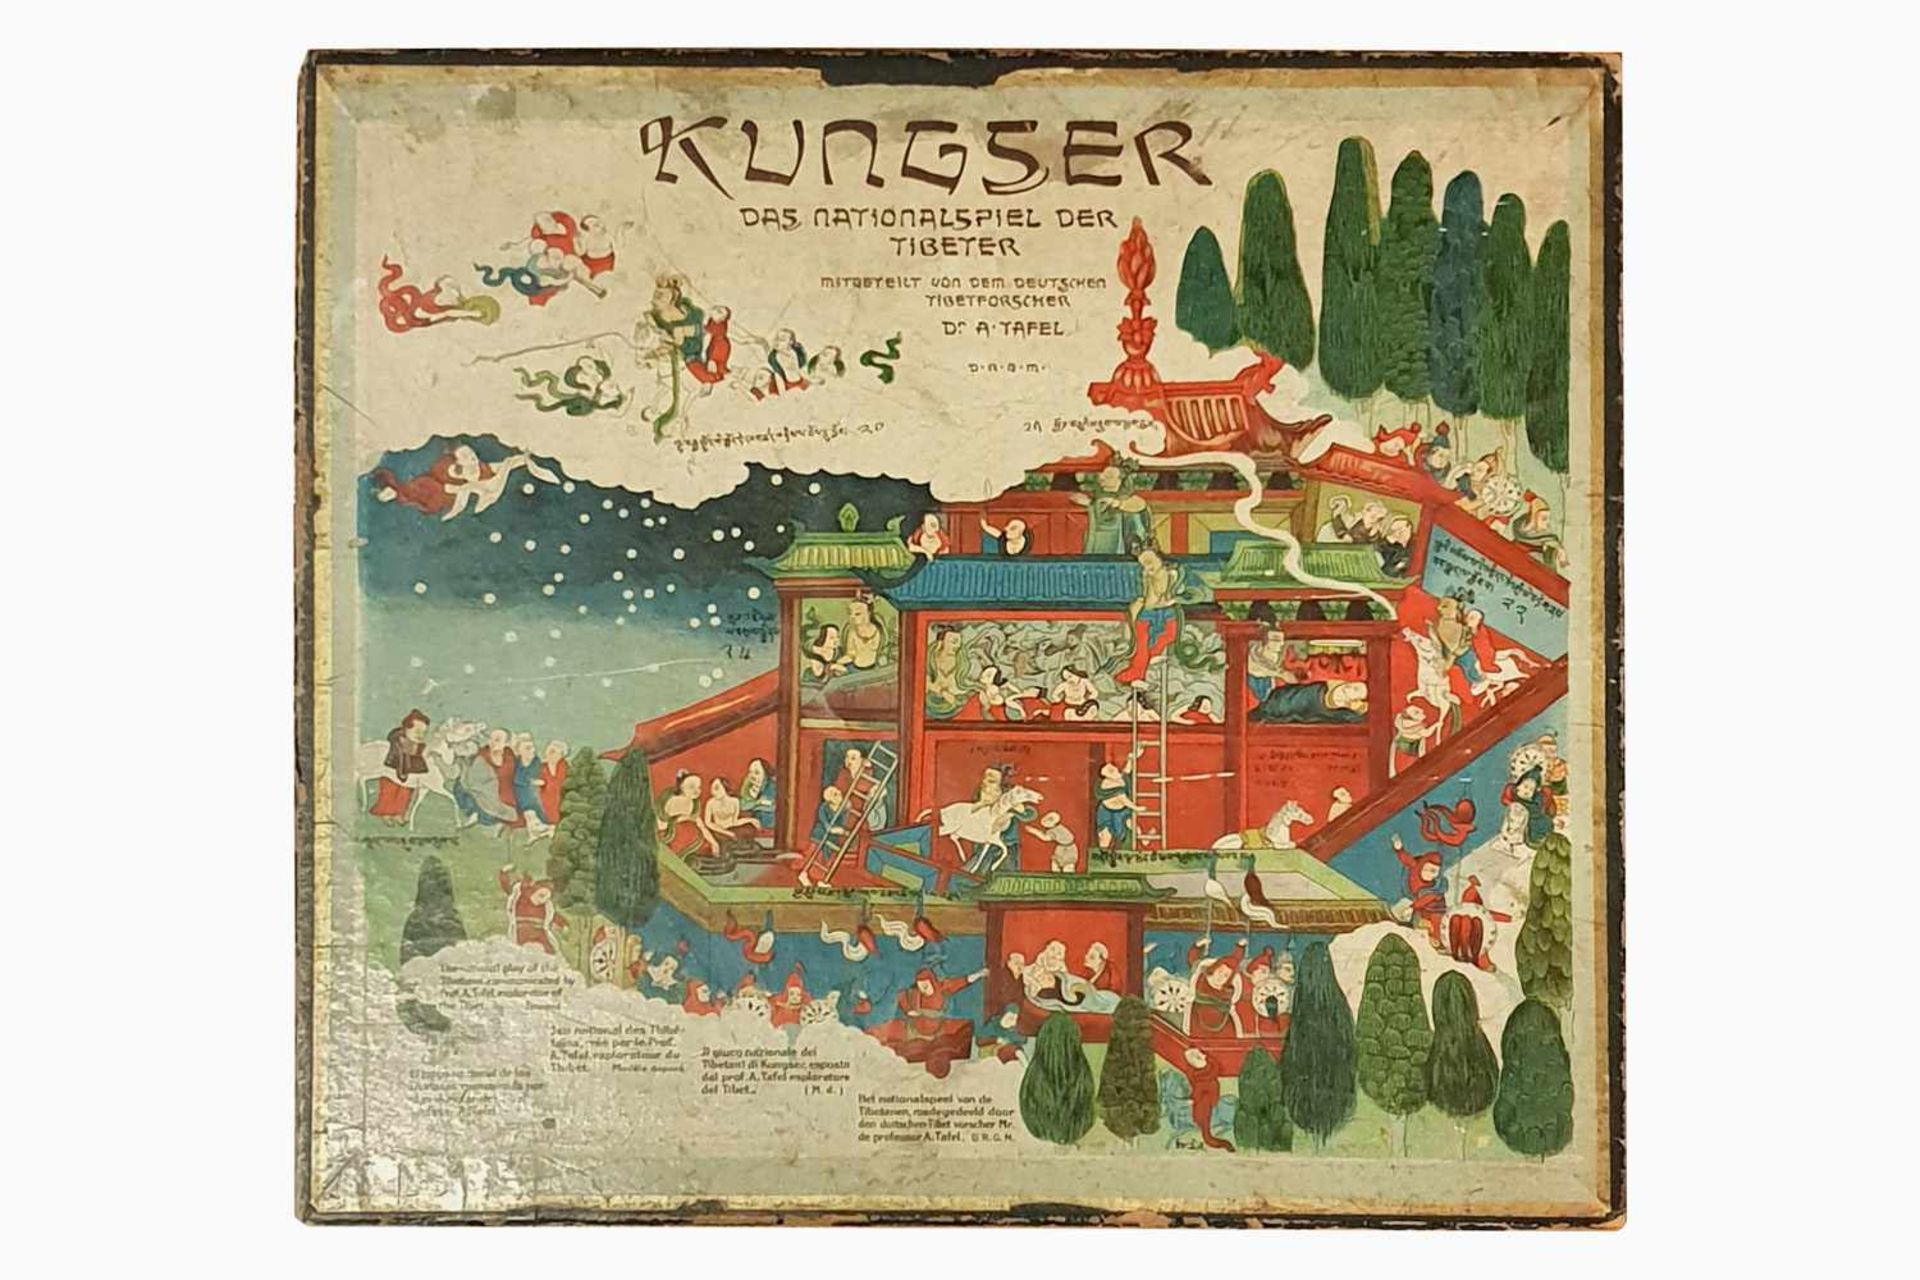 Kungser Luxusspiel, Spieltisch "Kungser" - das Nationalspiel der Tibeter, Luxusedition - - Image 5 of 6